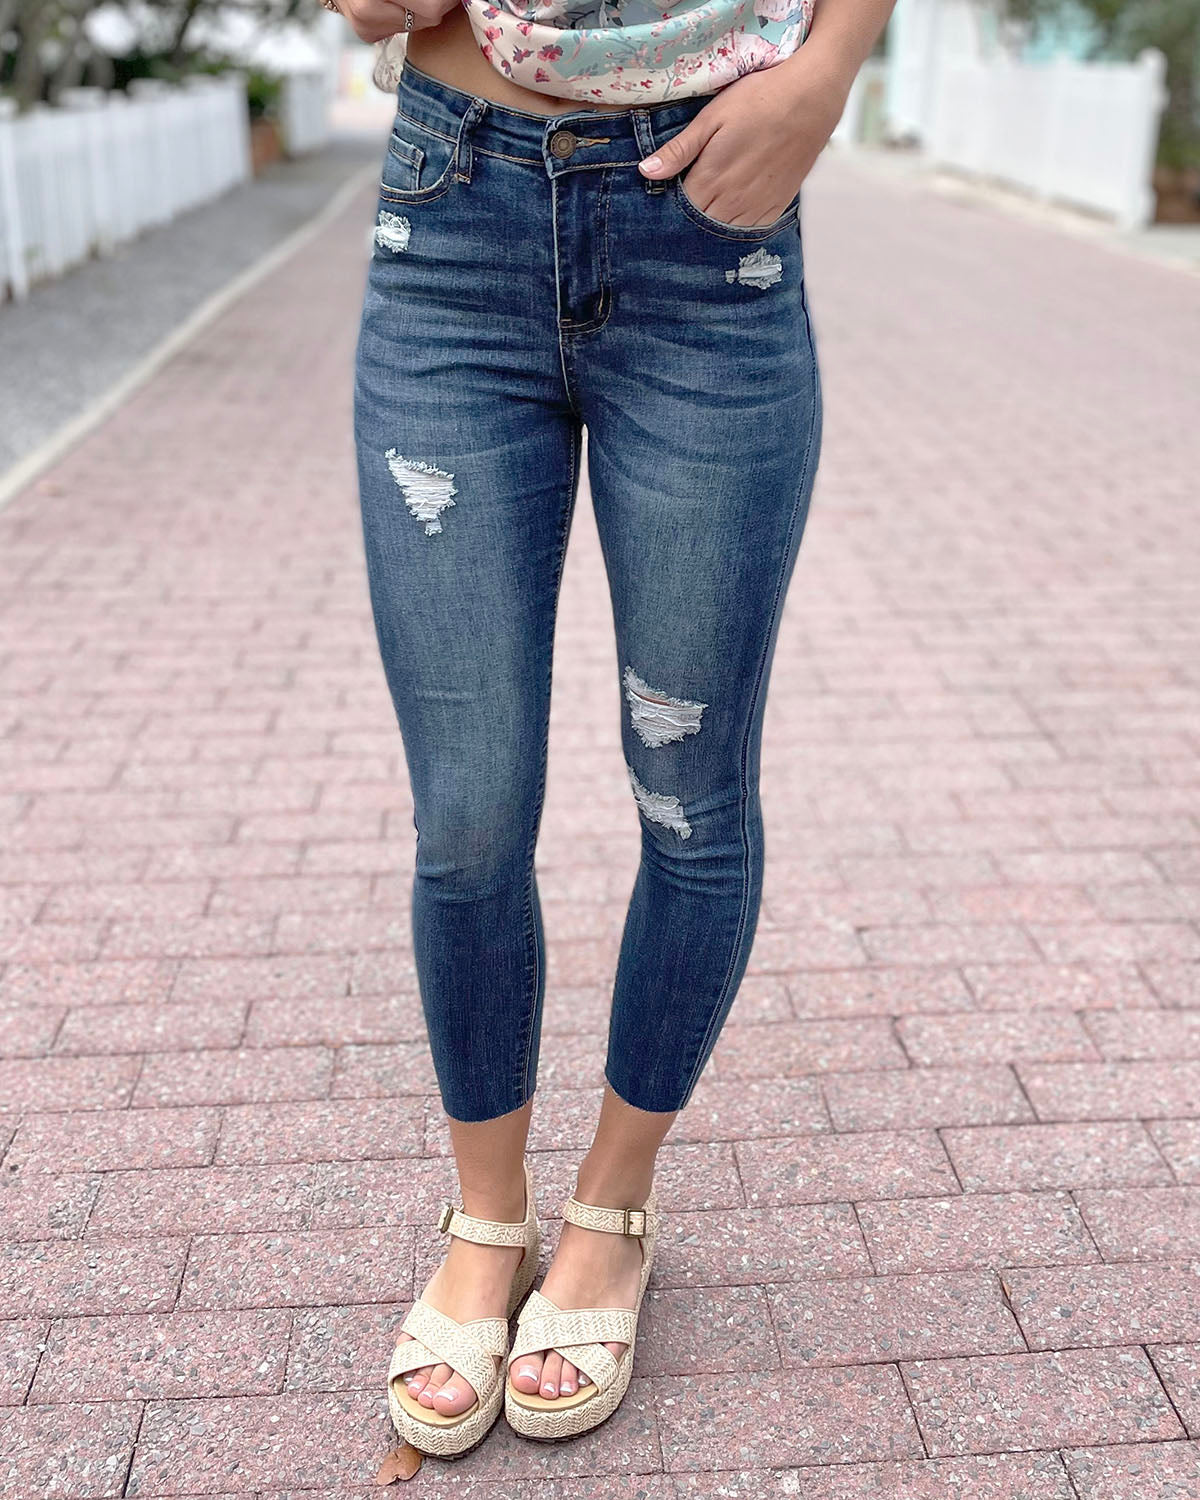 Women's Ripped Jeans Cute Distressed Denim Capri Pants Stretch